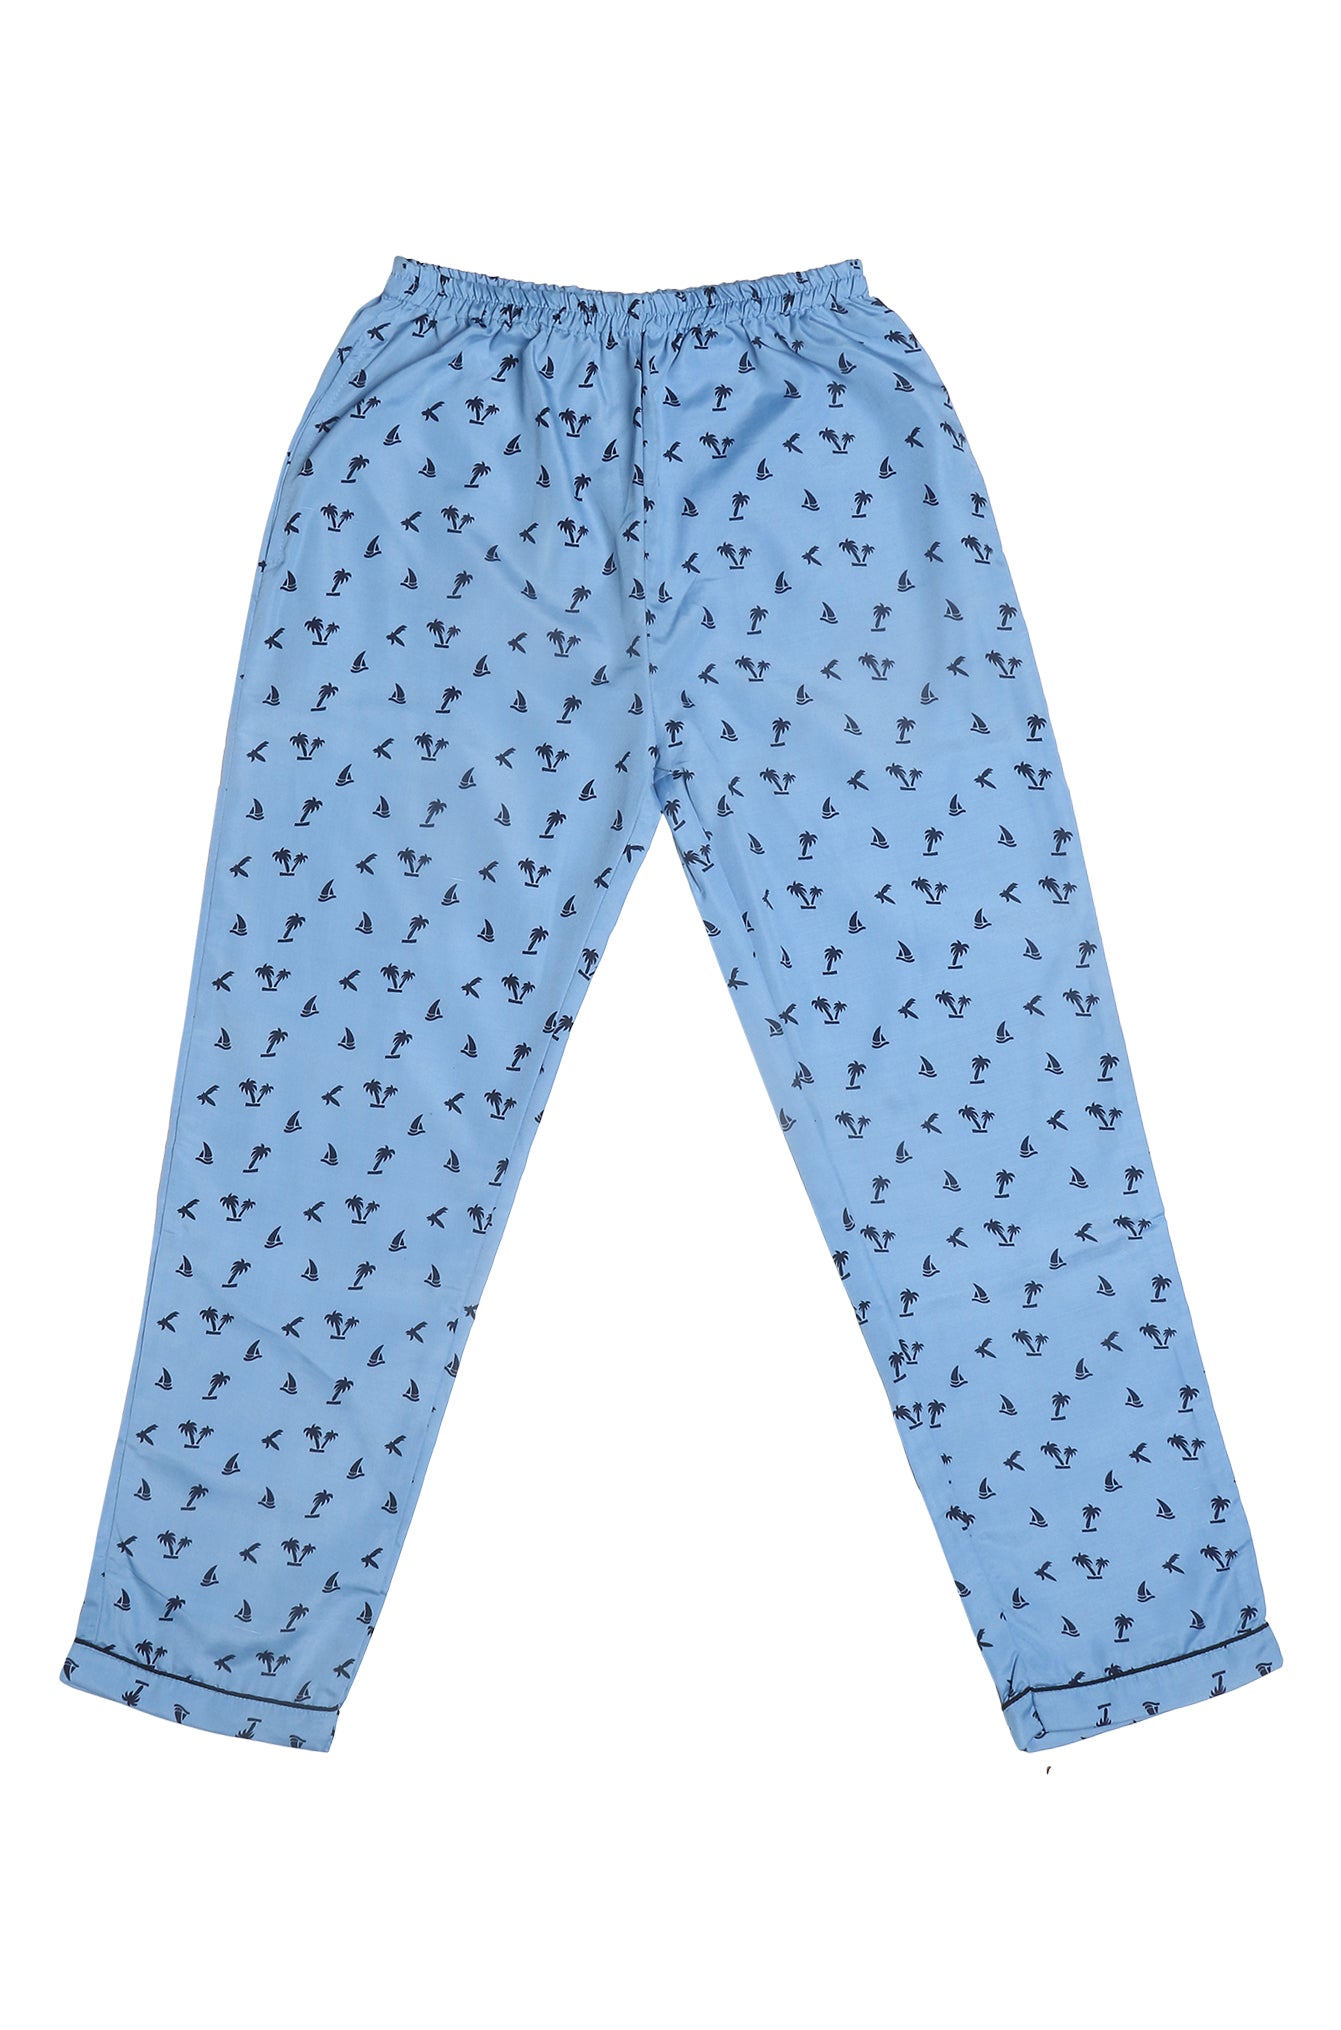 Single Pyjama (AW) [Buy 1 Get 1 Free]